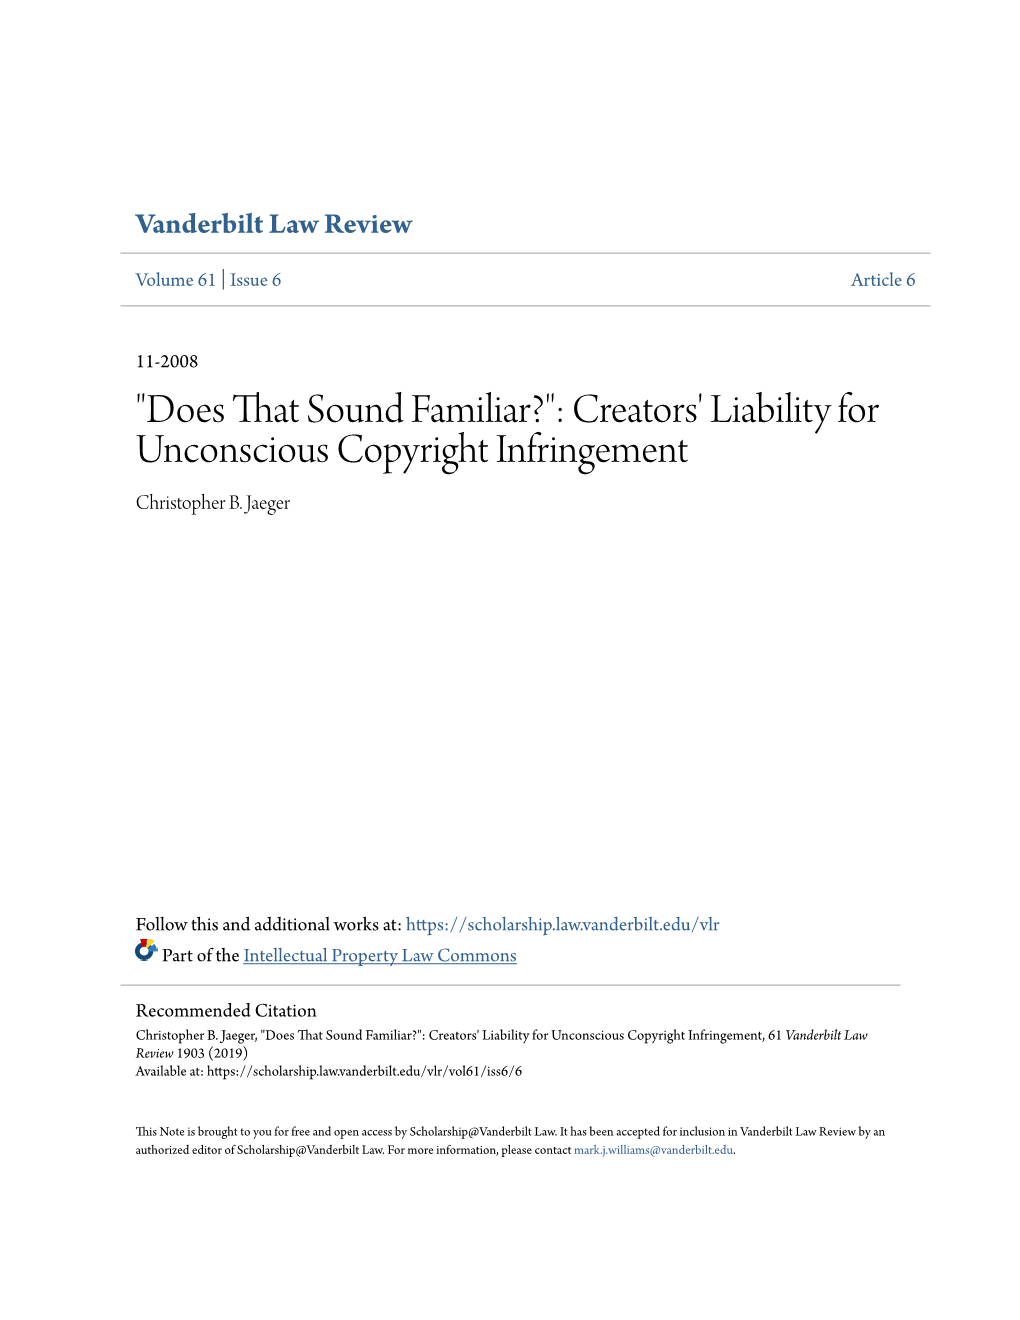 Creators' Liability for Unconscious Copyright Infringement Christopher B